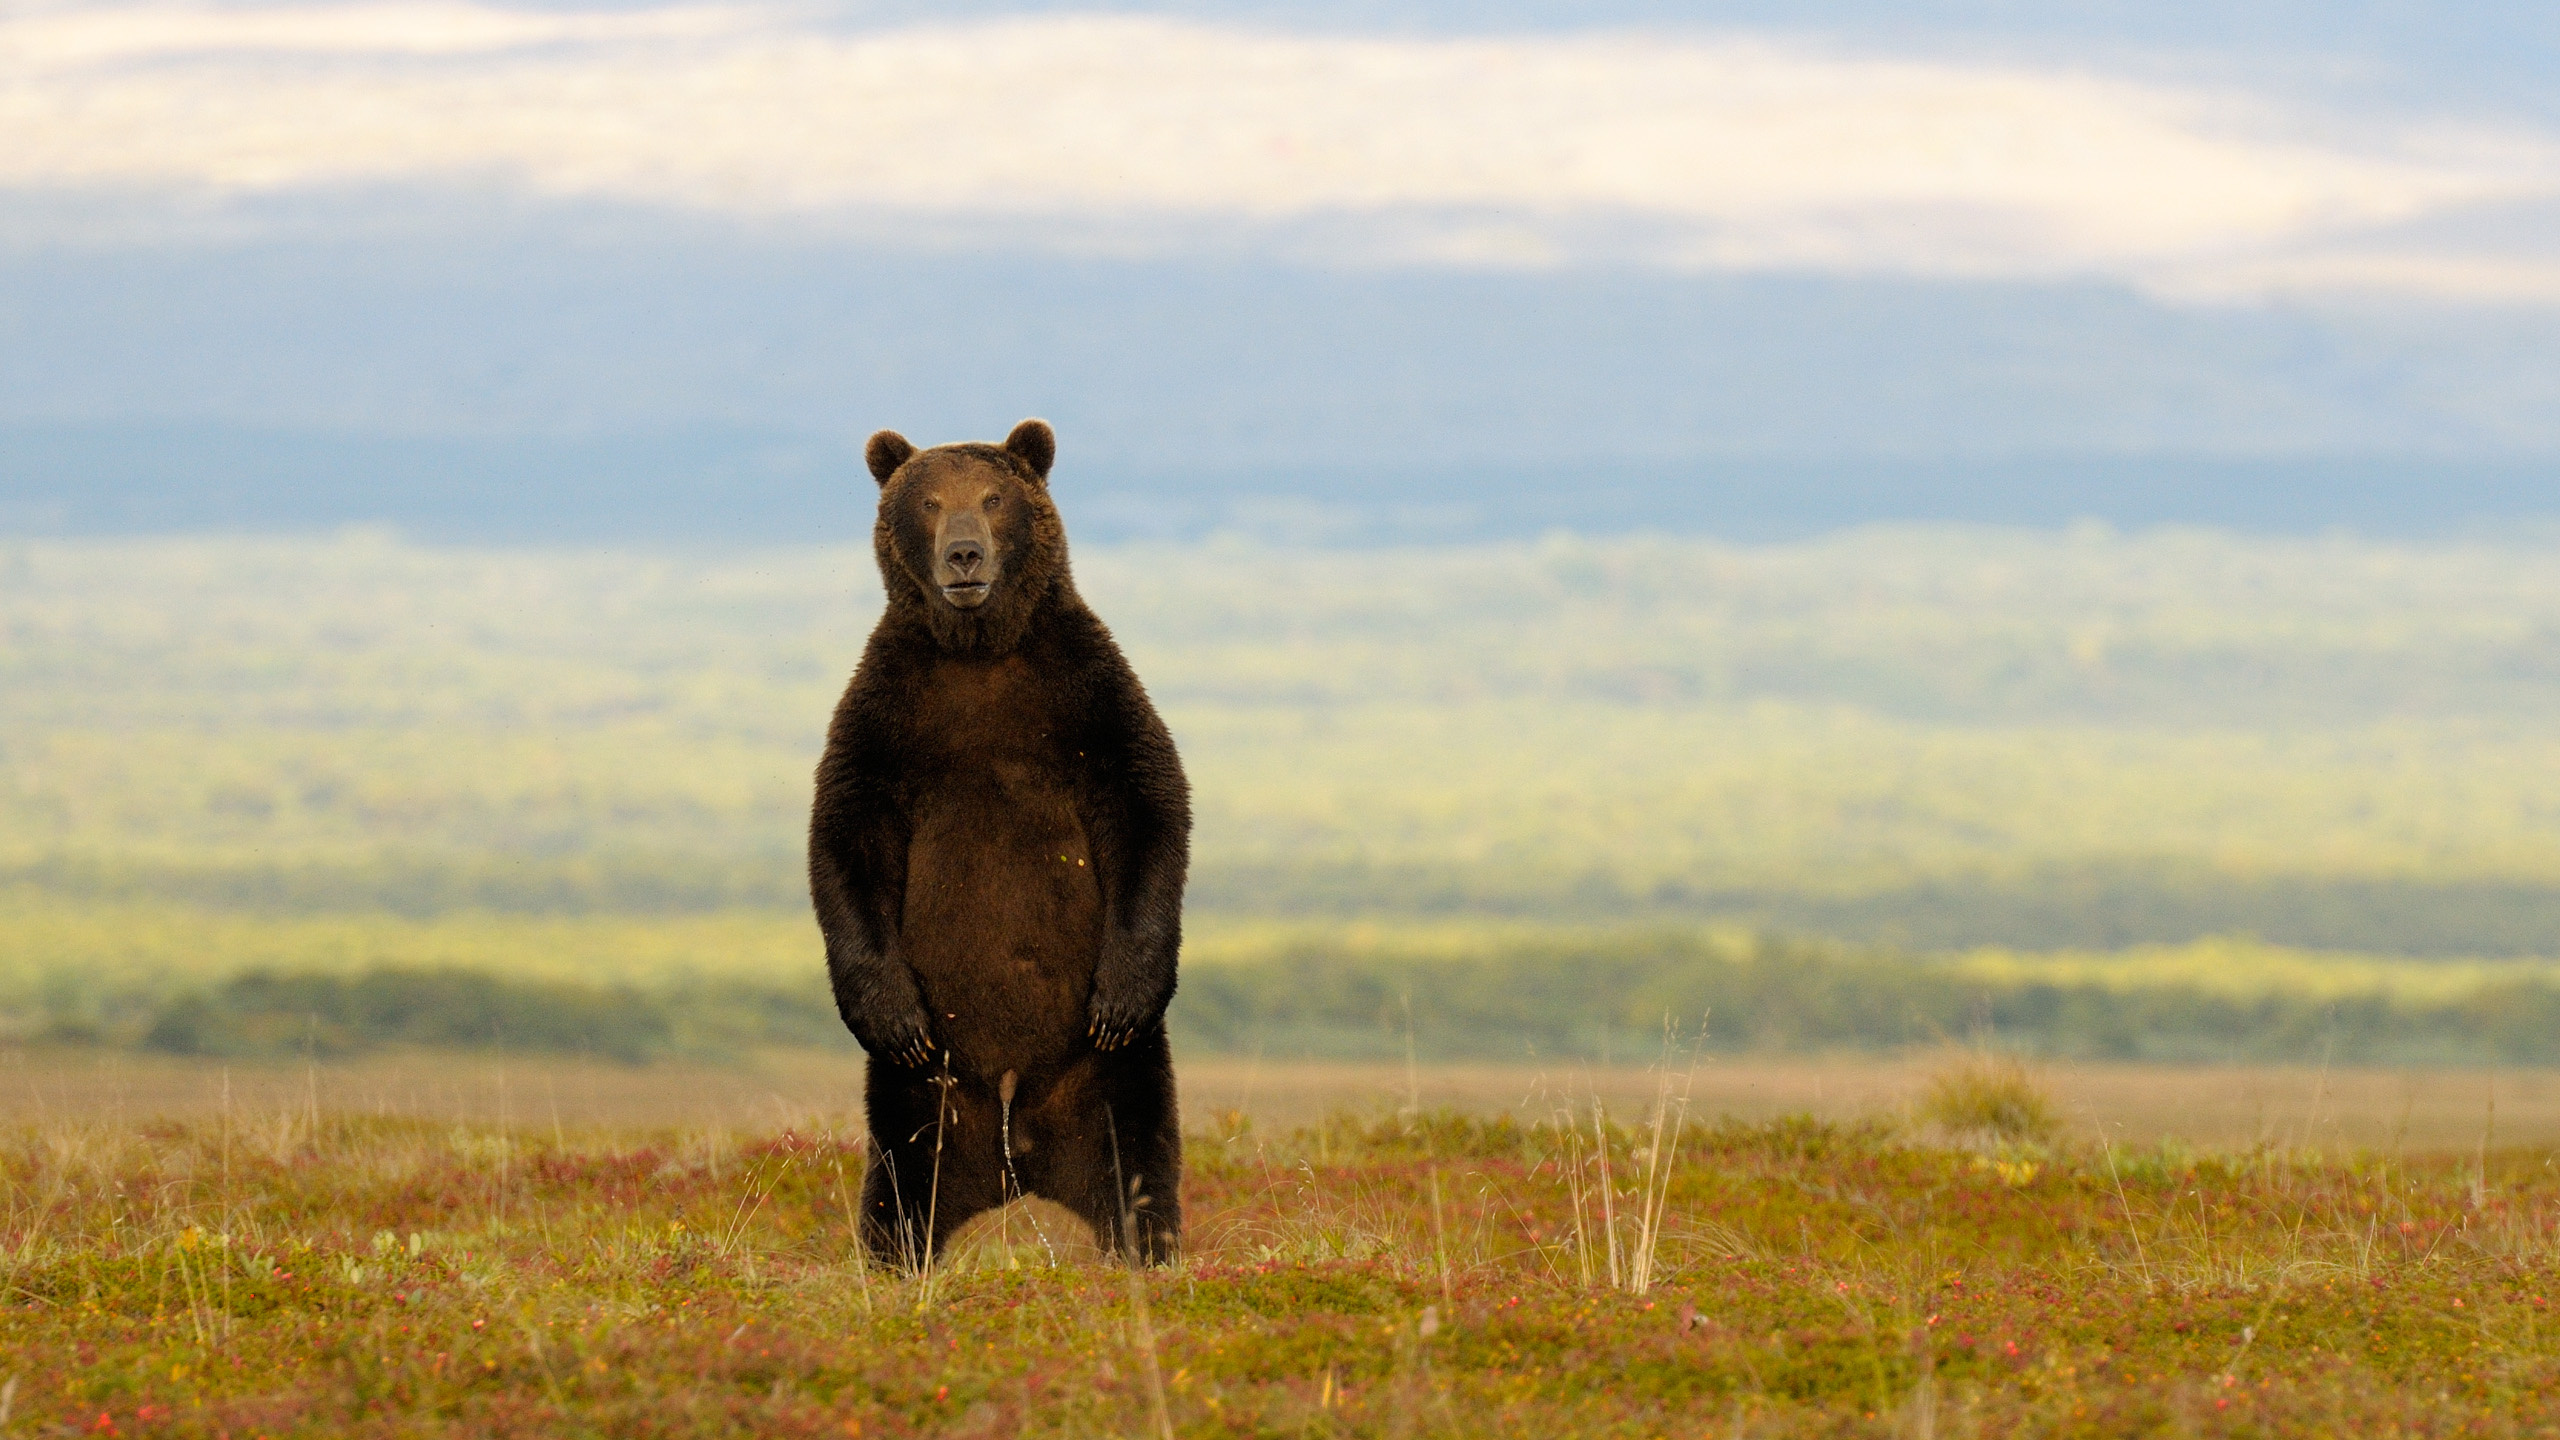 野生动物, 生态区, 灰熊, 棕熊, 草原 壁纸 2560x1440 允许